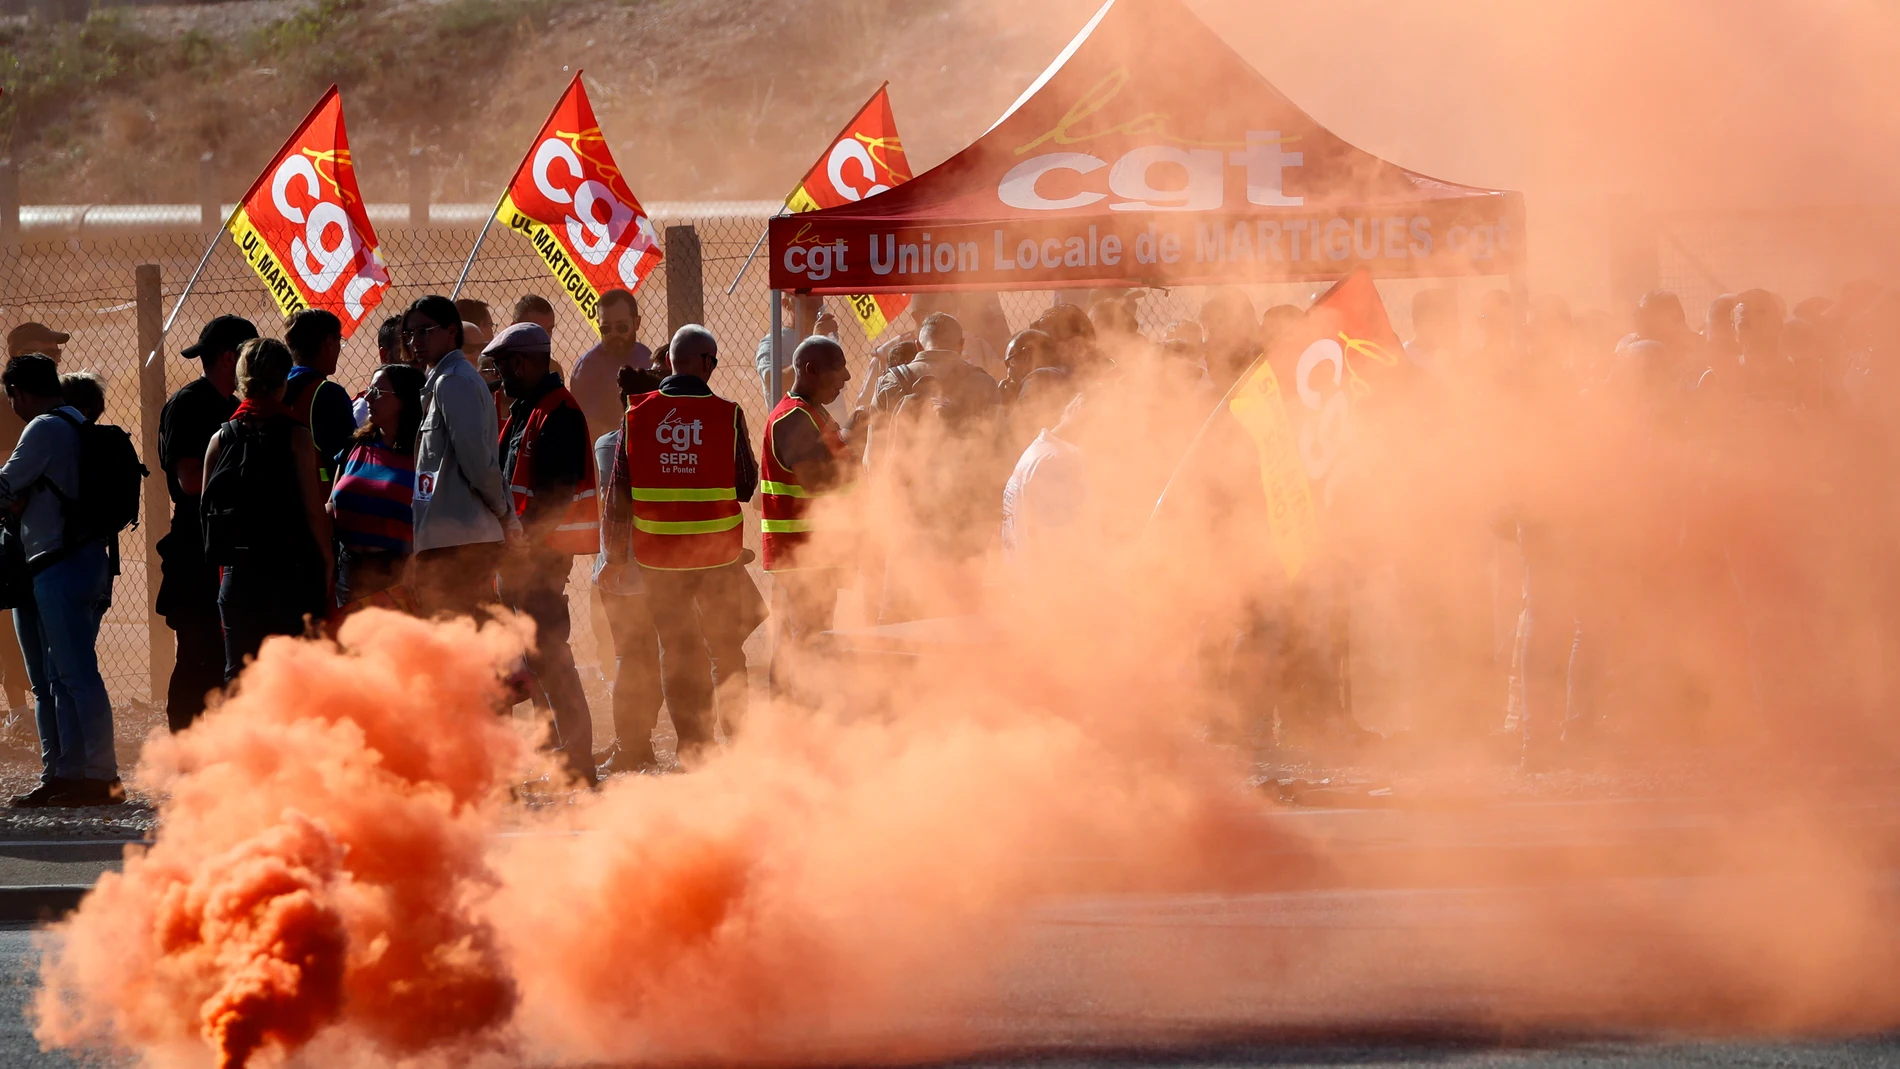 Francia, paralizada por una huelga general en la que reclaman subidas salariales contra la carestía